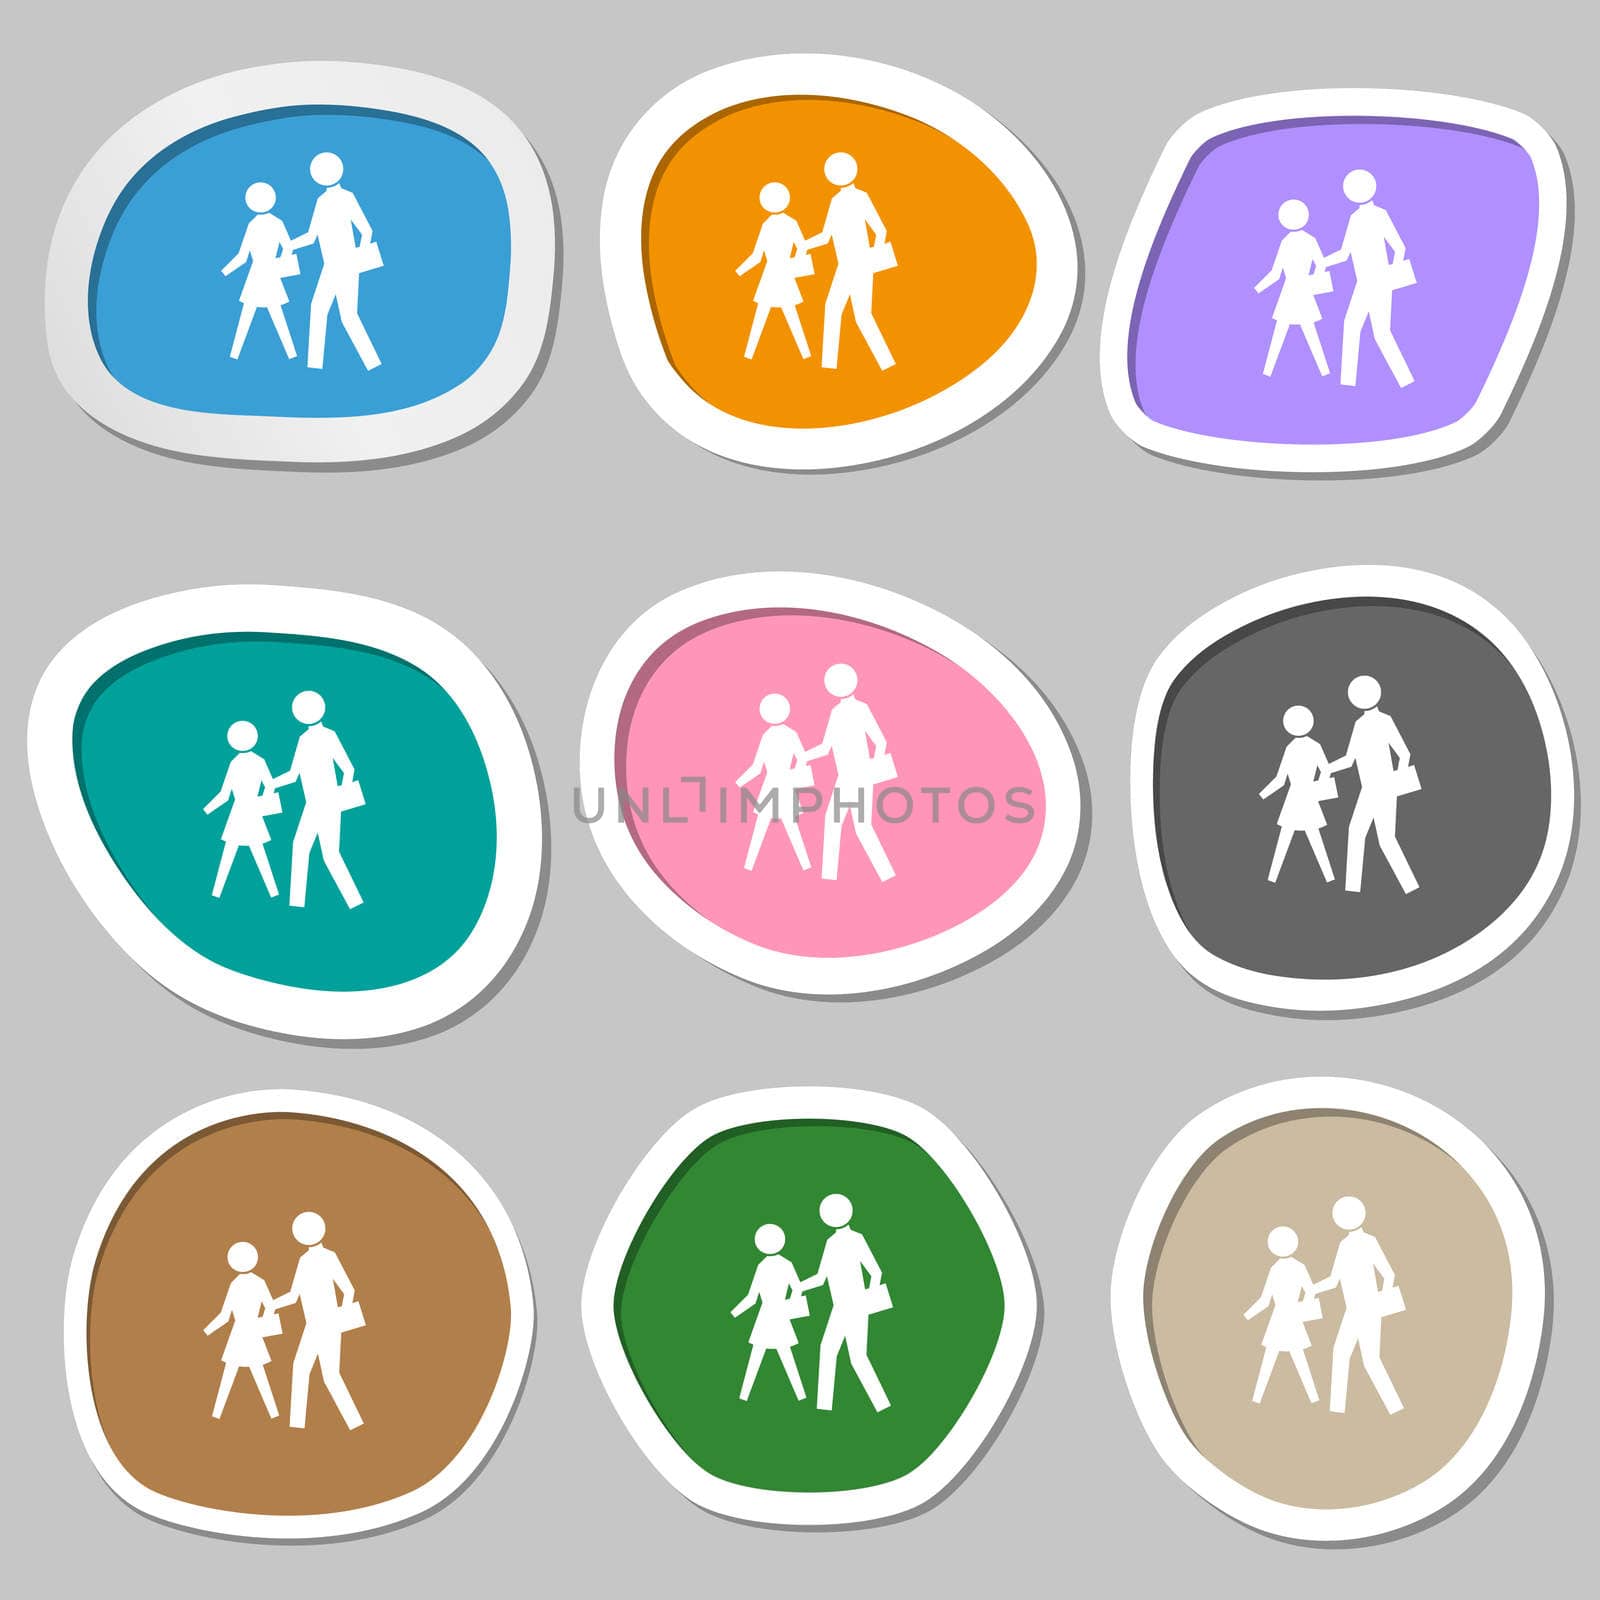 crosswalk icon symbols. Multicolored paper stickers. illustration